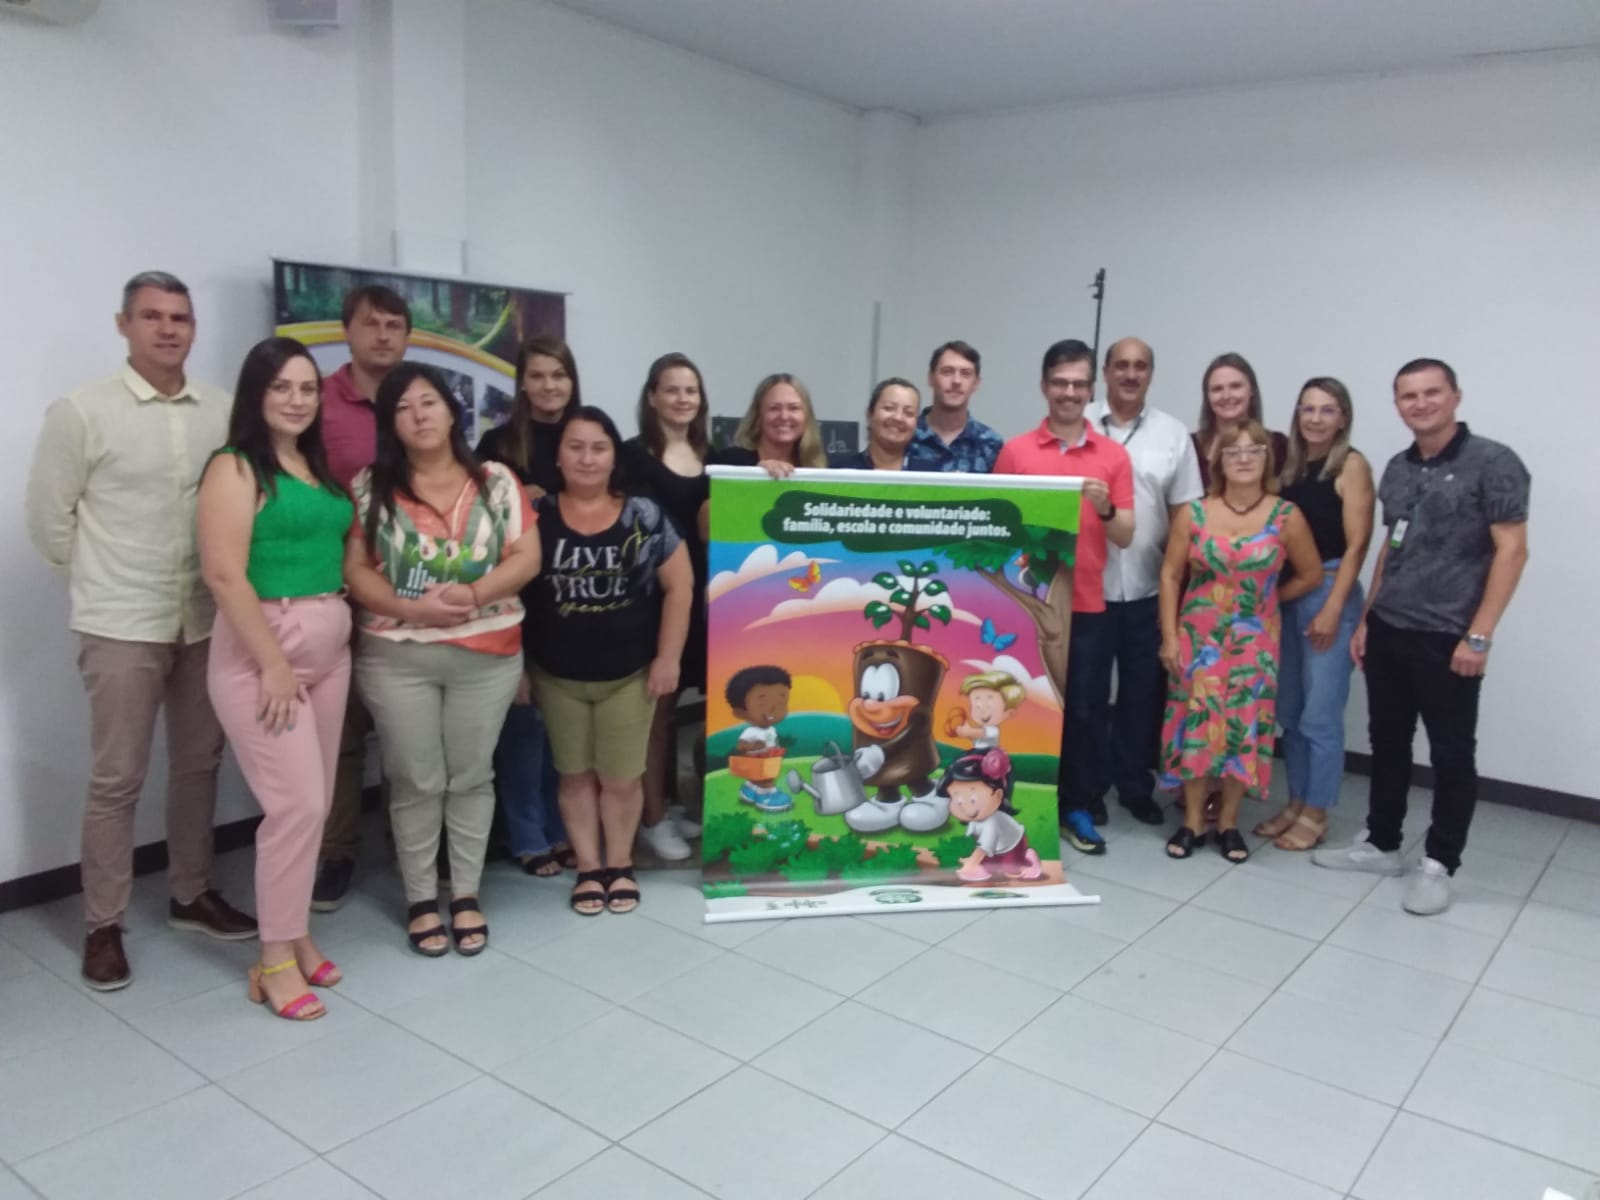 Reunião Pedagógica "Verde é Vida" da Afubra